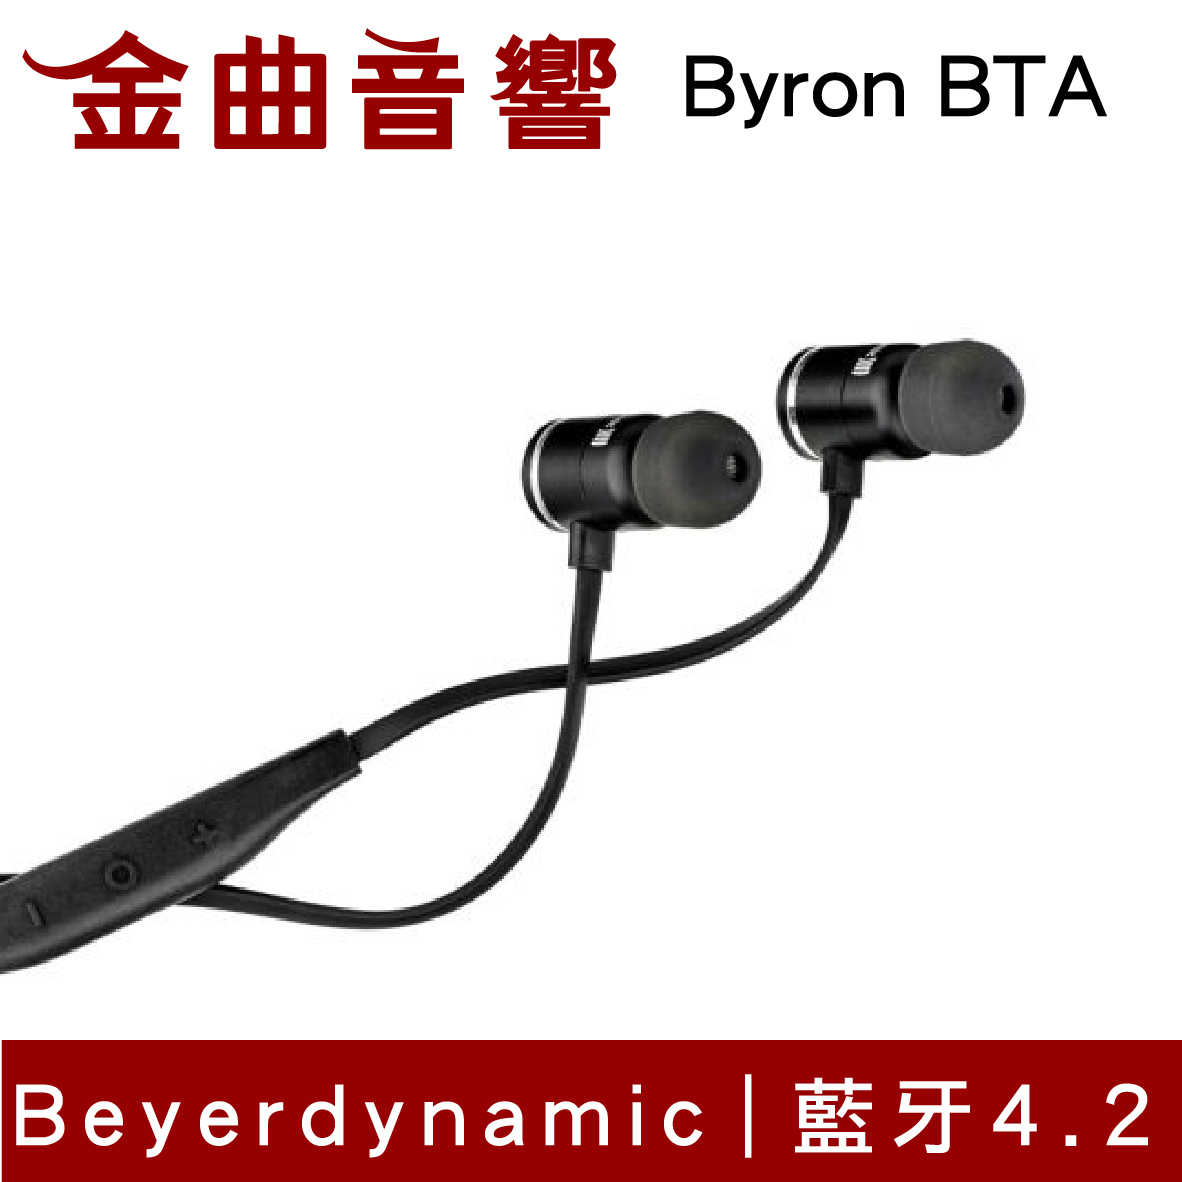 【福利機B組】Beyerdynamic 拜耳 Byron BTA 藍芽 無線 耳道式耳機 | 金曲音響